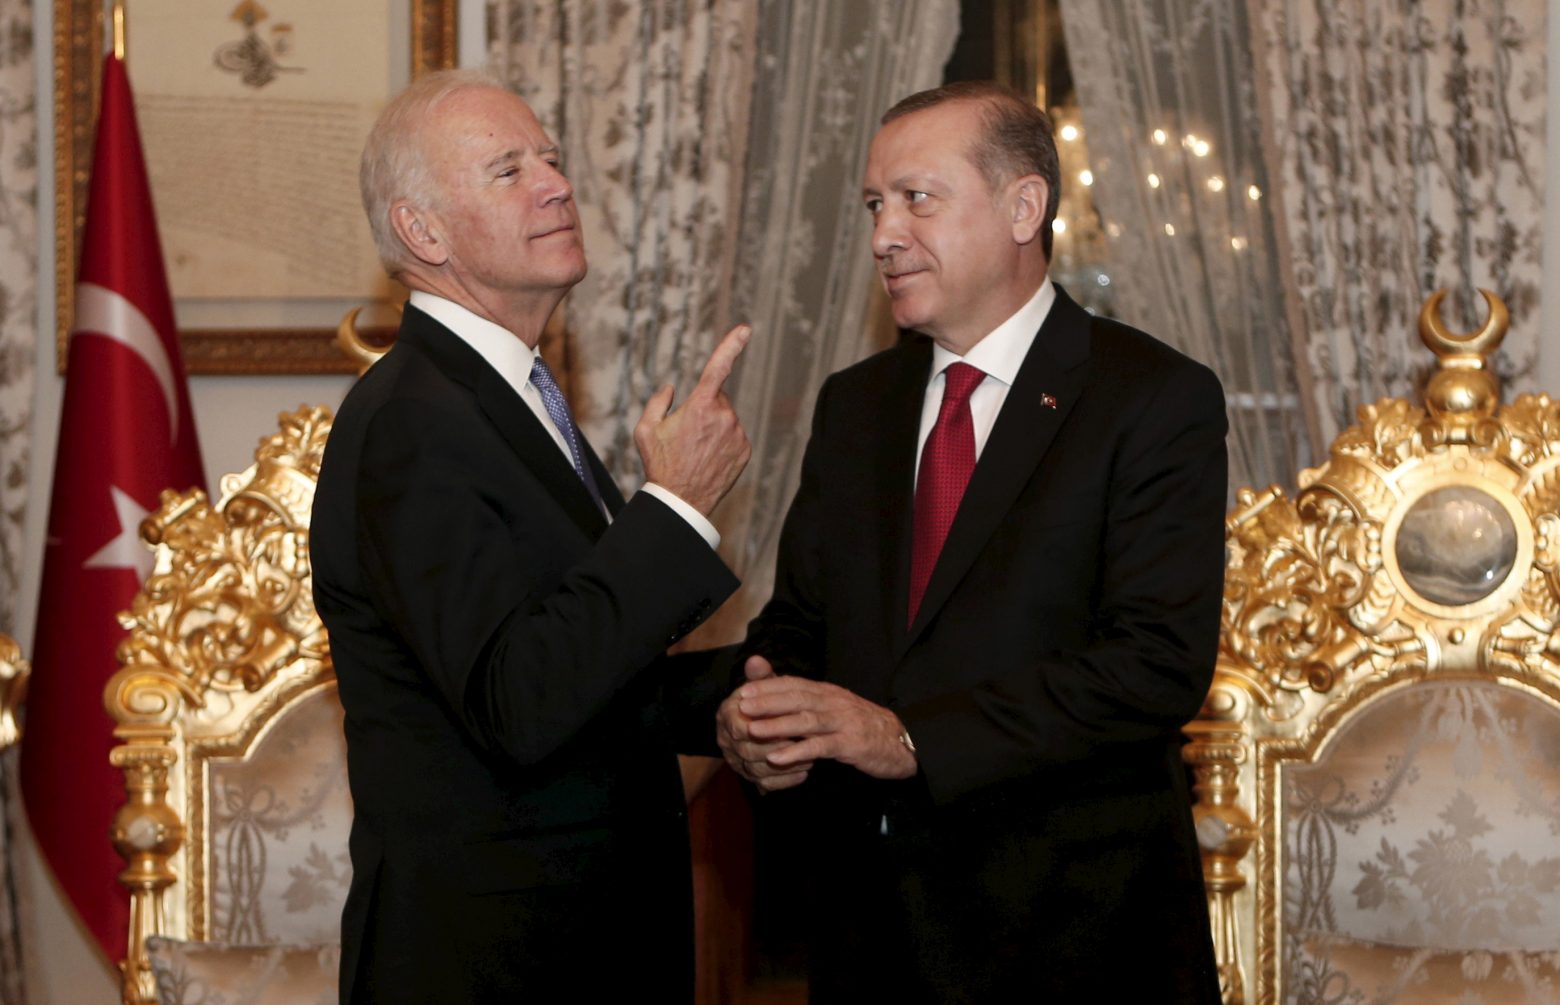 Τουρκία - «Κλείδωσε» η συνάντηση Ερντογάν – Μπάιντεν λέει ο Ιμπραχίμ Καλίν